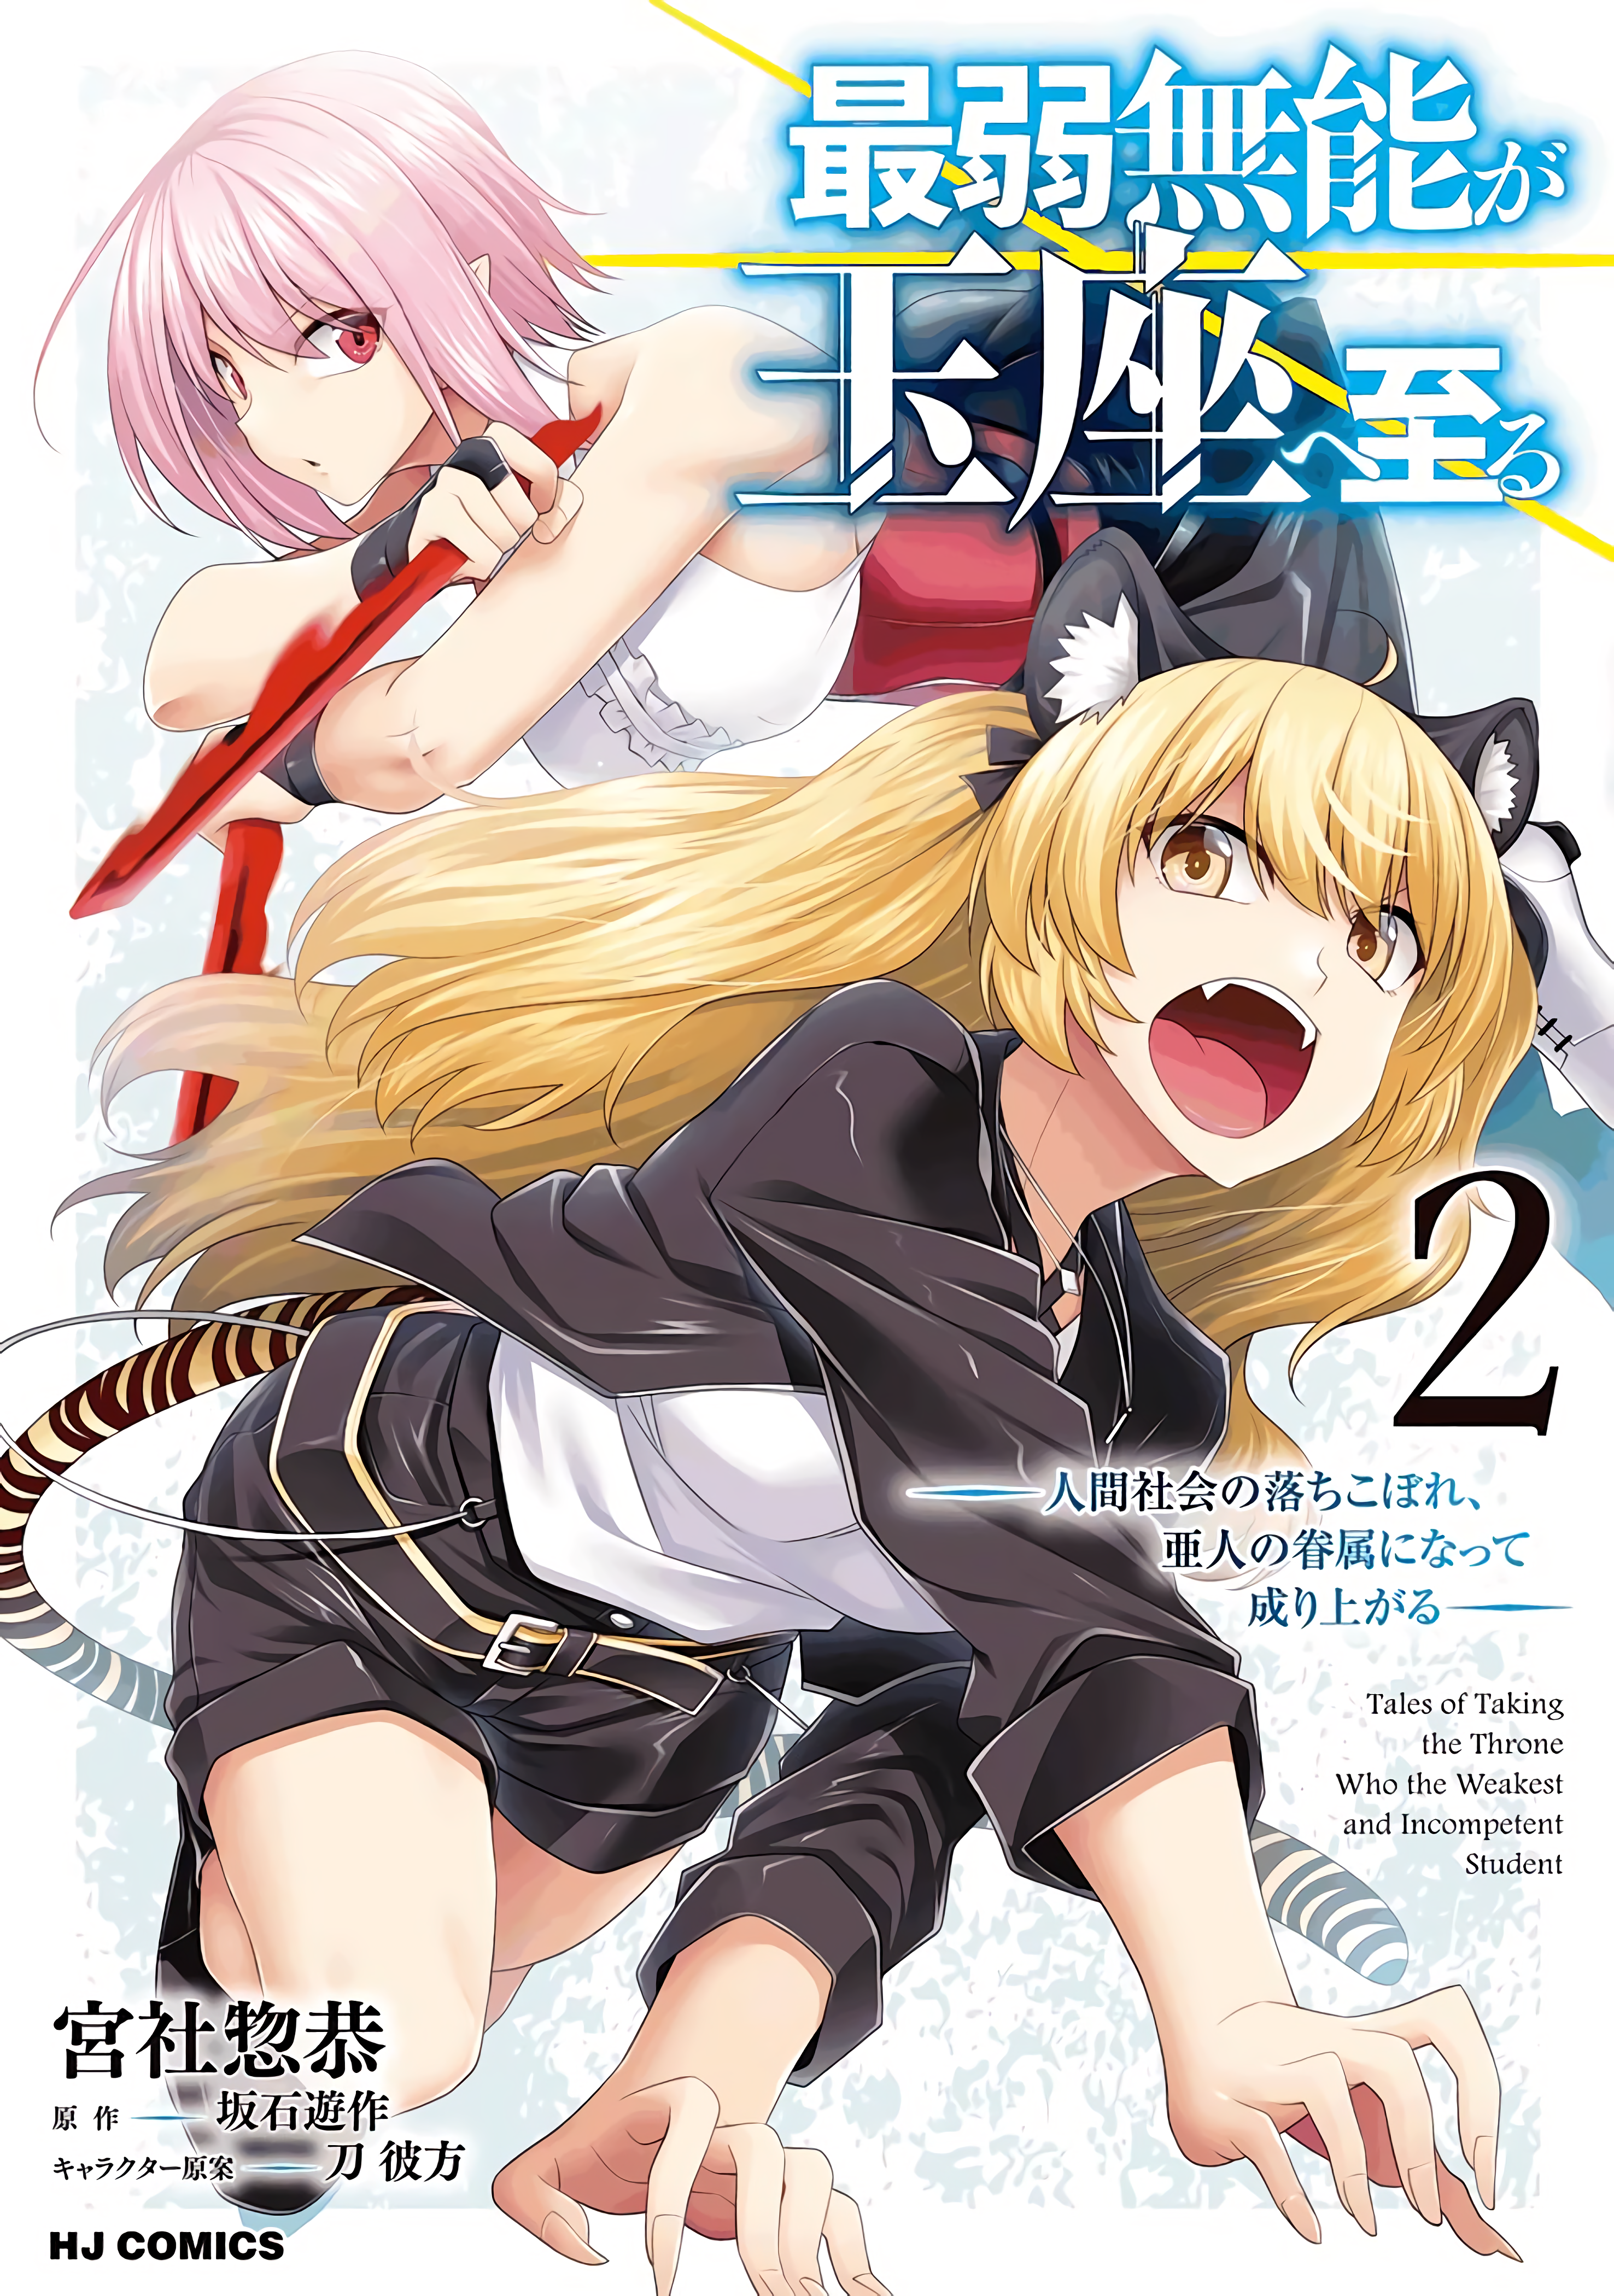 Saikyō no Shuzoku ga Ningen Datta Ken #3 - Vol. 3 (Issue) - User Reviews